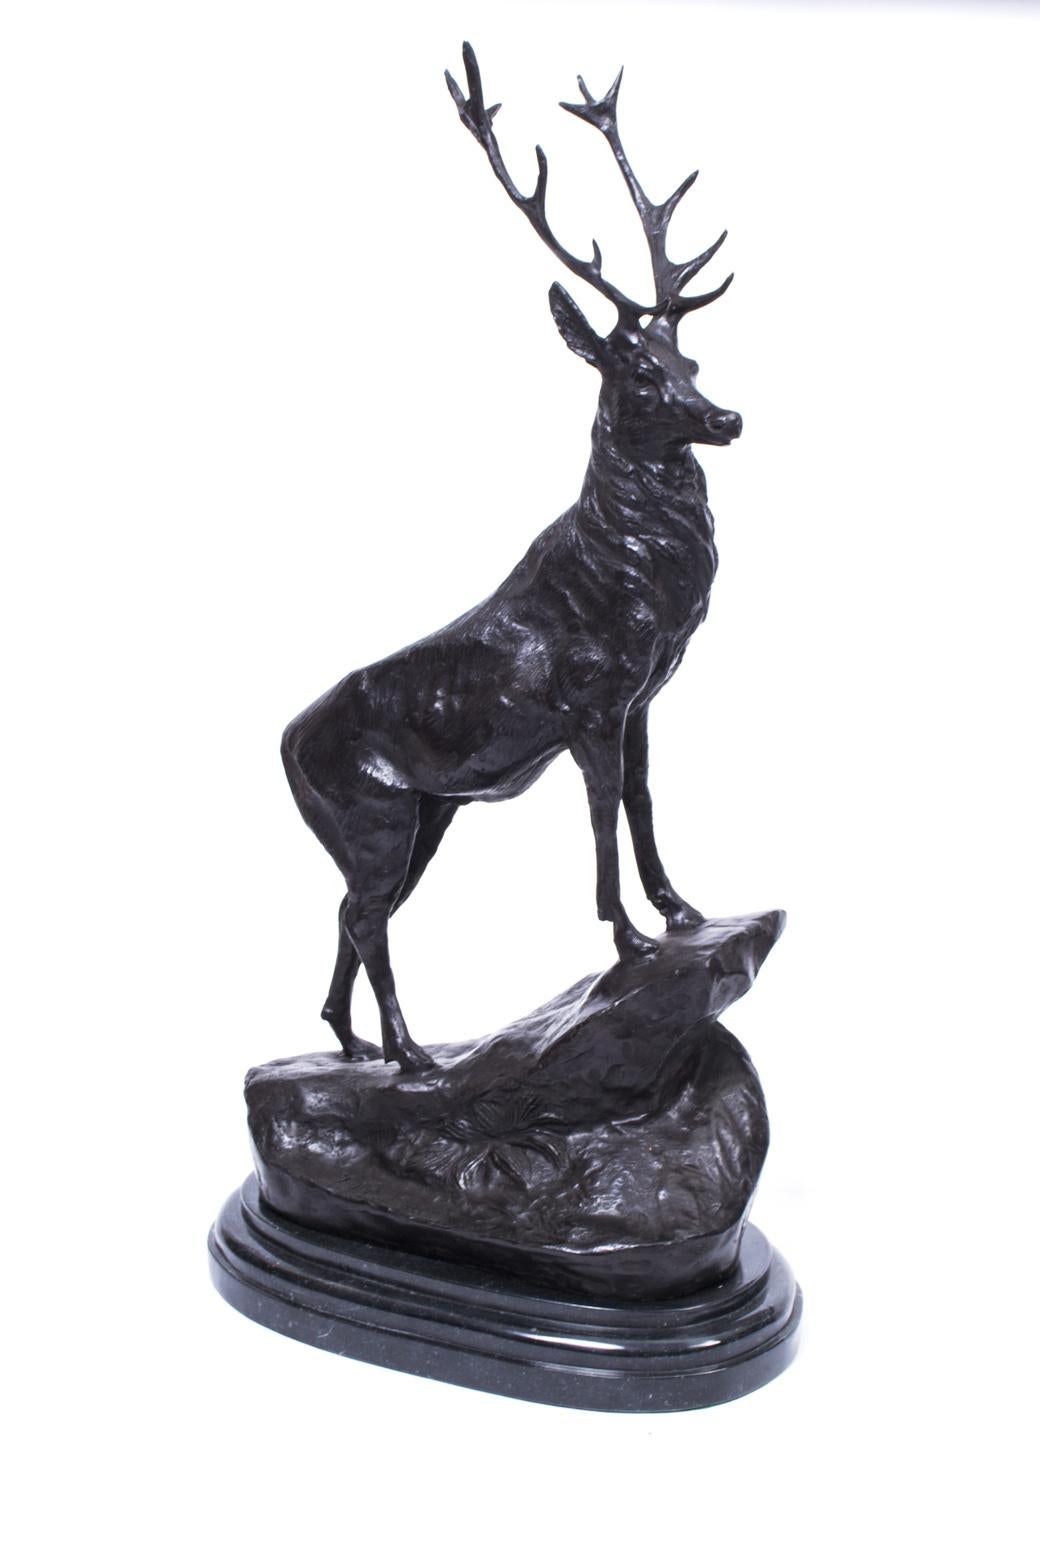 Il s'agit d'une belle paire de cerfs en bronze, portant la réplique de la signature du célèbre sculpteur français Jules Moigniez, datant du dernier quart du 20e siècle.

Les cerfs sont en bronze par le procédé de la cire perdue, et leurs